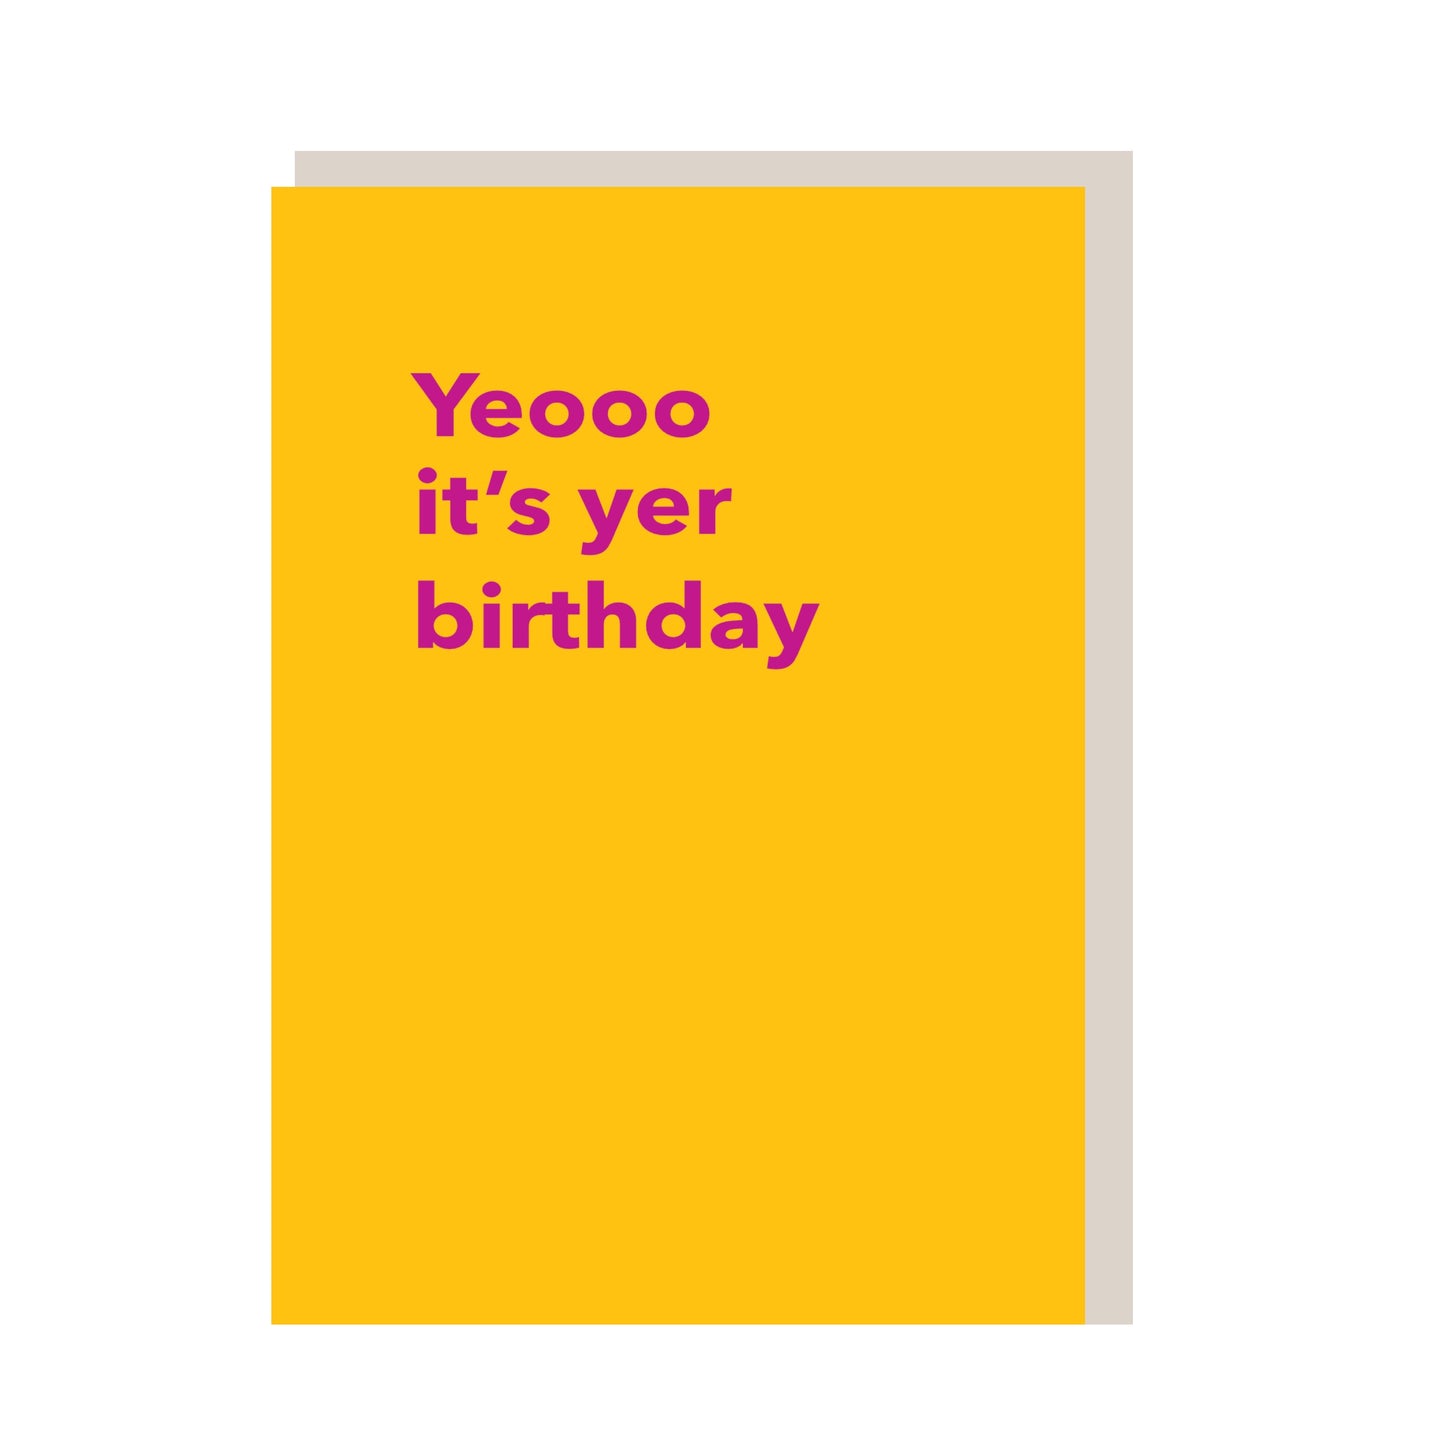 Yeoo it’s yer birthday